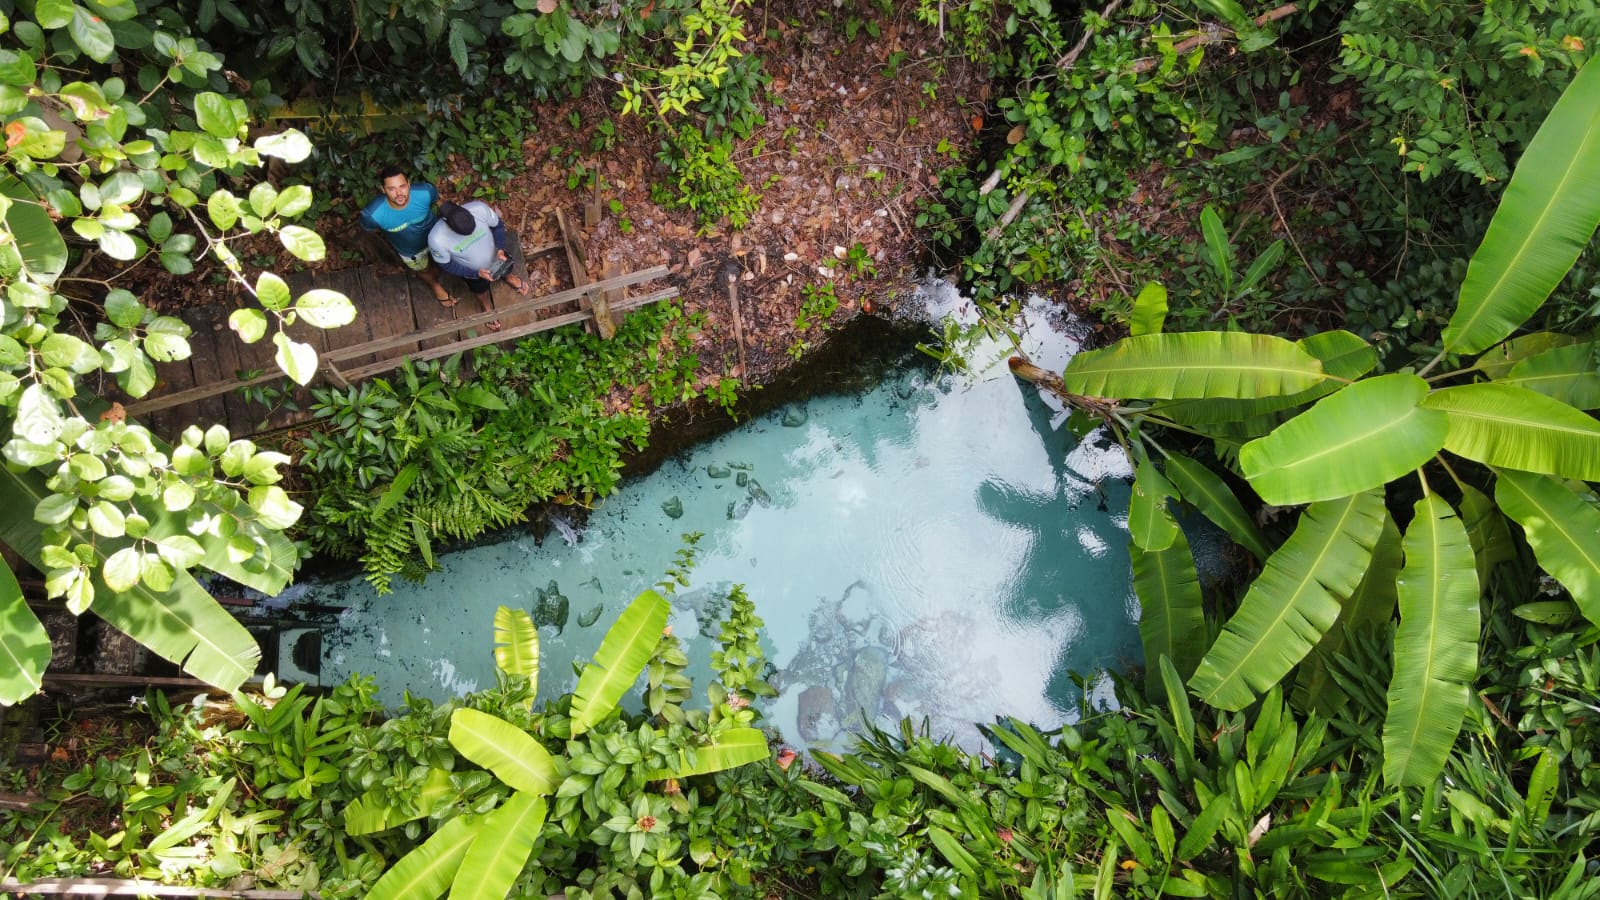 A riqueza hídrica e natural do Jalapão encanta - Foto - Walker Ribeiro/Governo do Tocantins